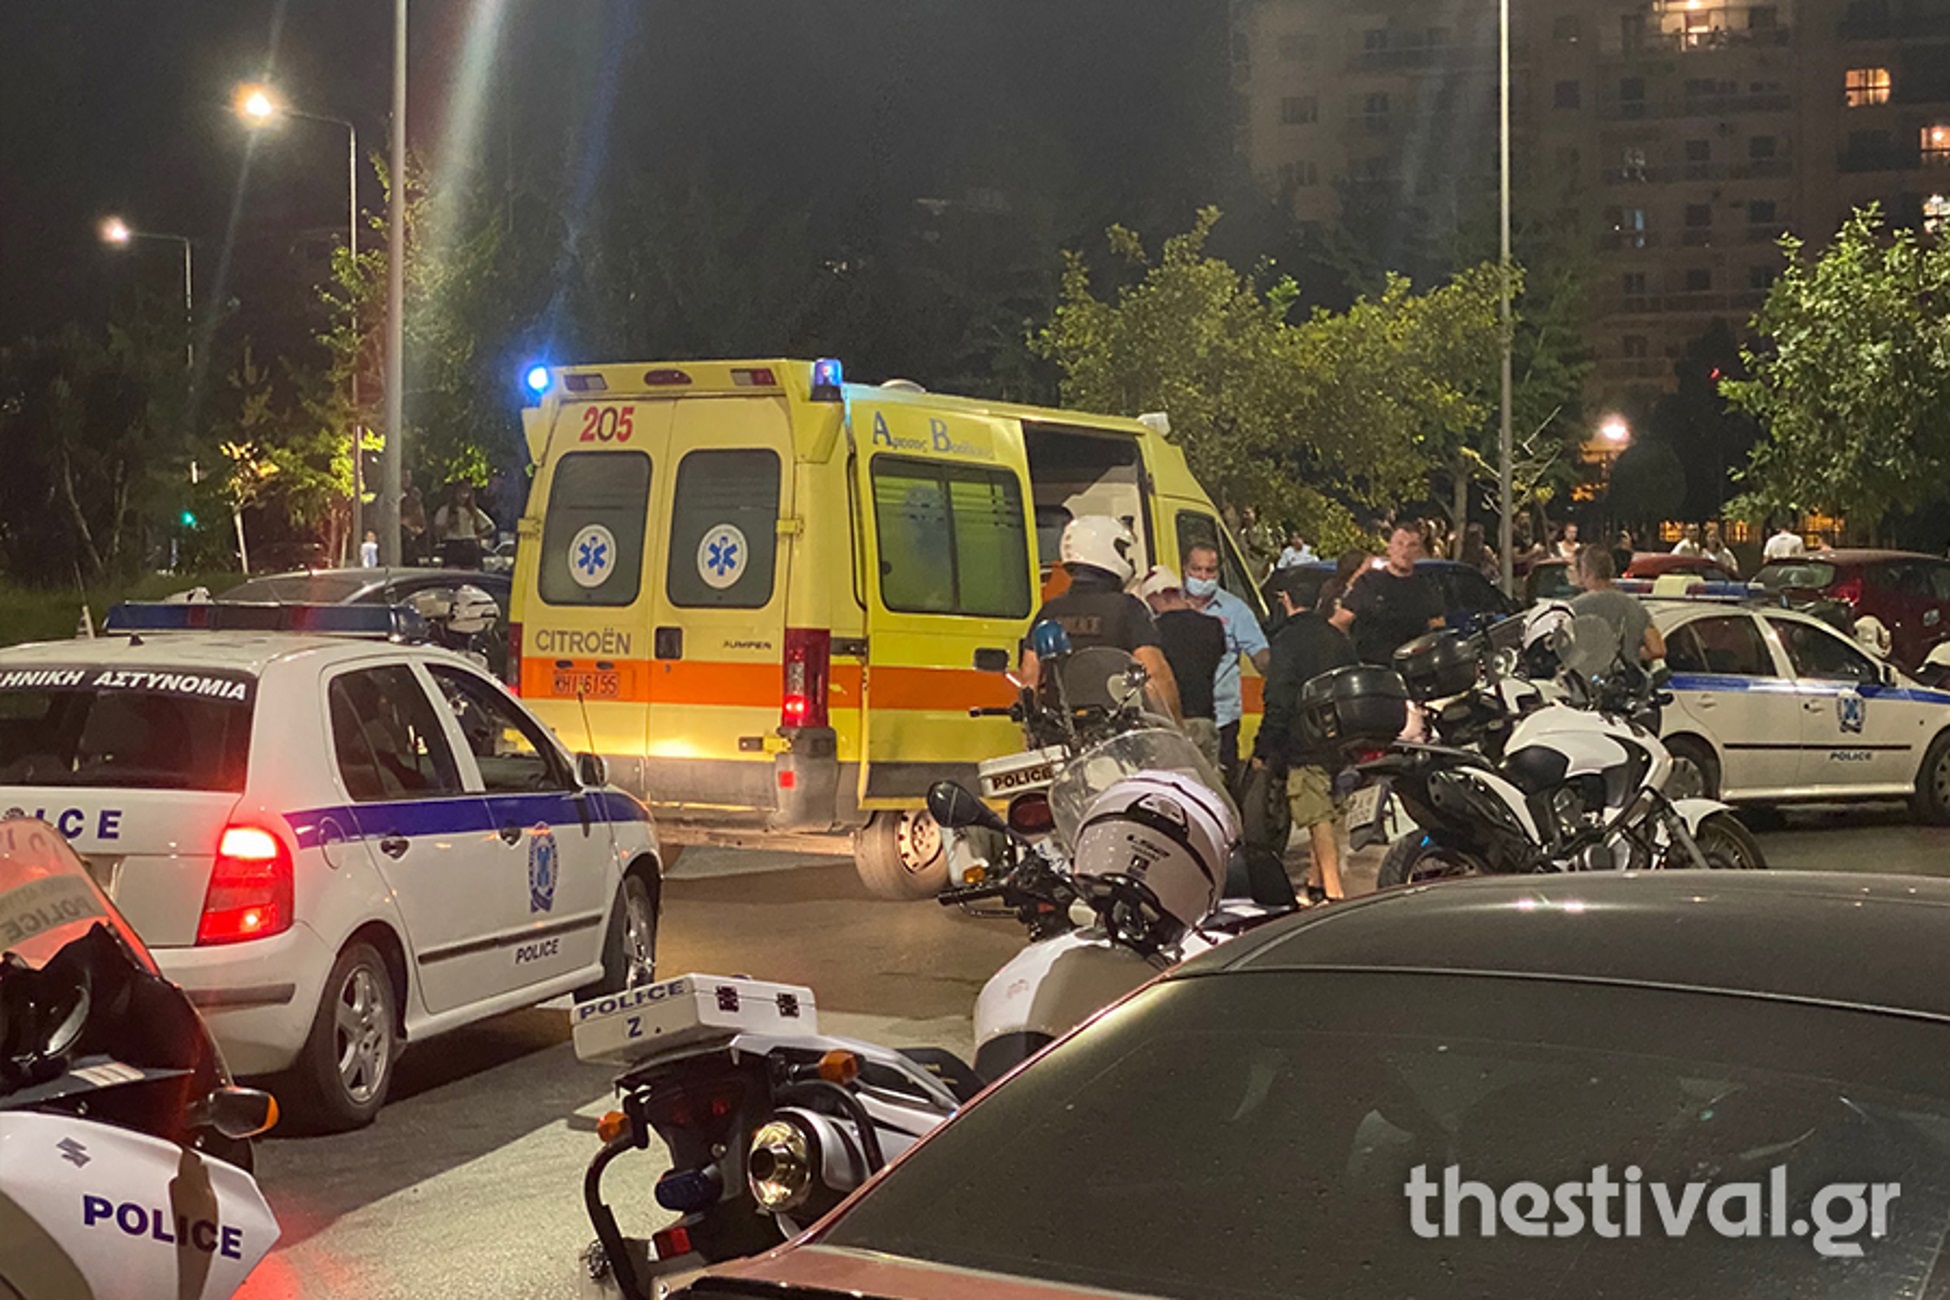 Θεσσαλονίκη: Επεισόδια, τραυματίες και 51 συλλήψεις! Τα συνθήματα στα μάρμαρα του Λευκού Πύργου που άναψαν φωτιές (Βίντεο)